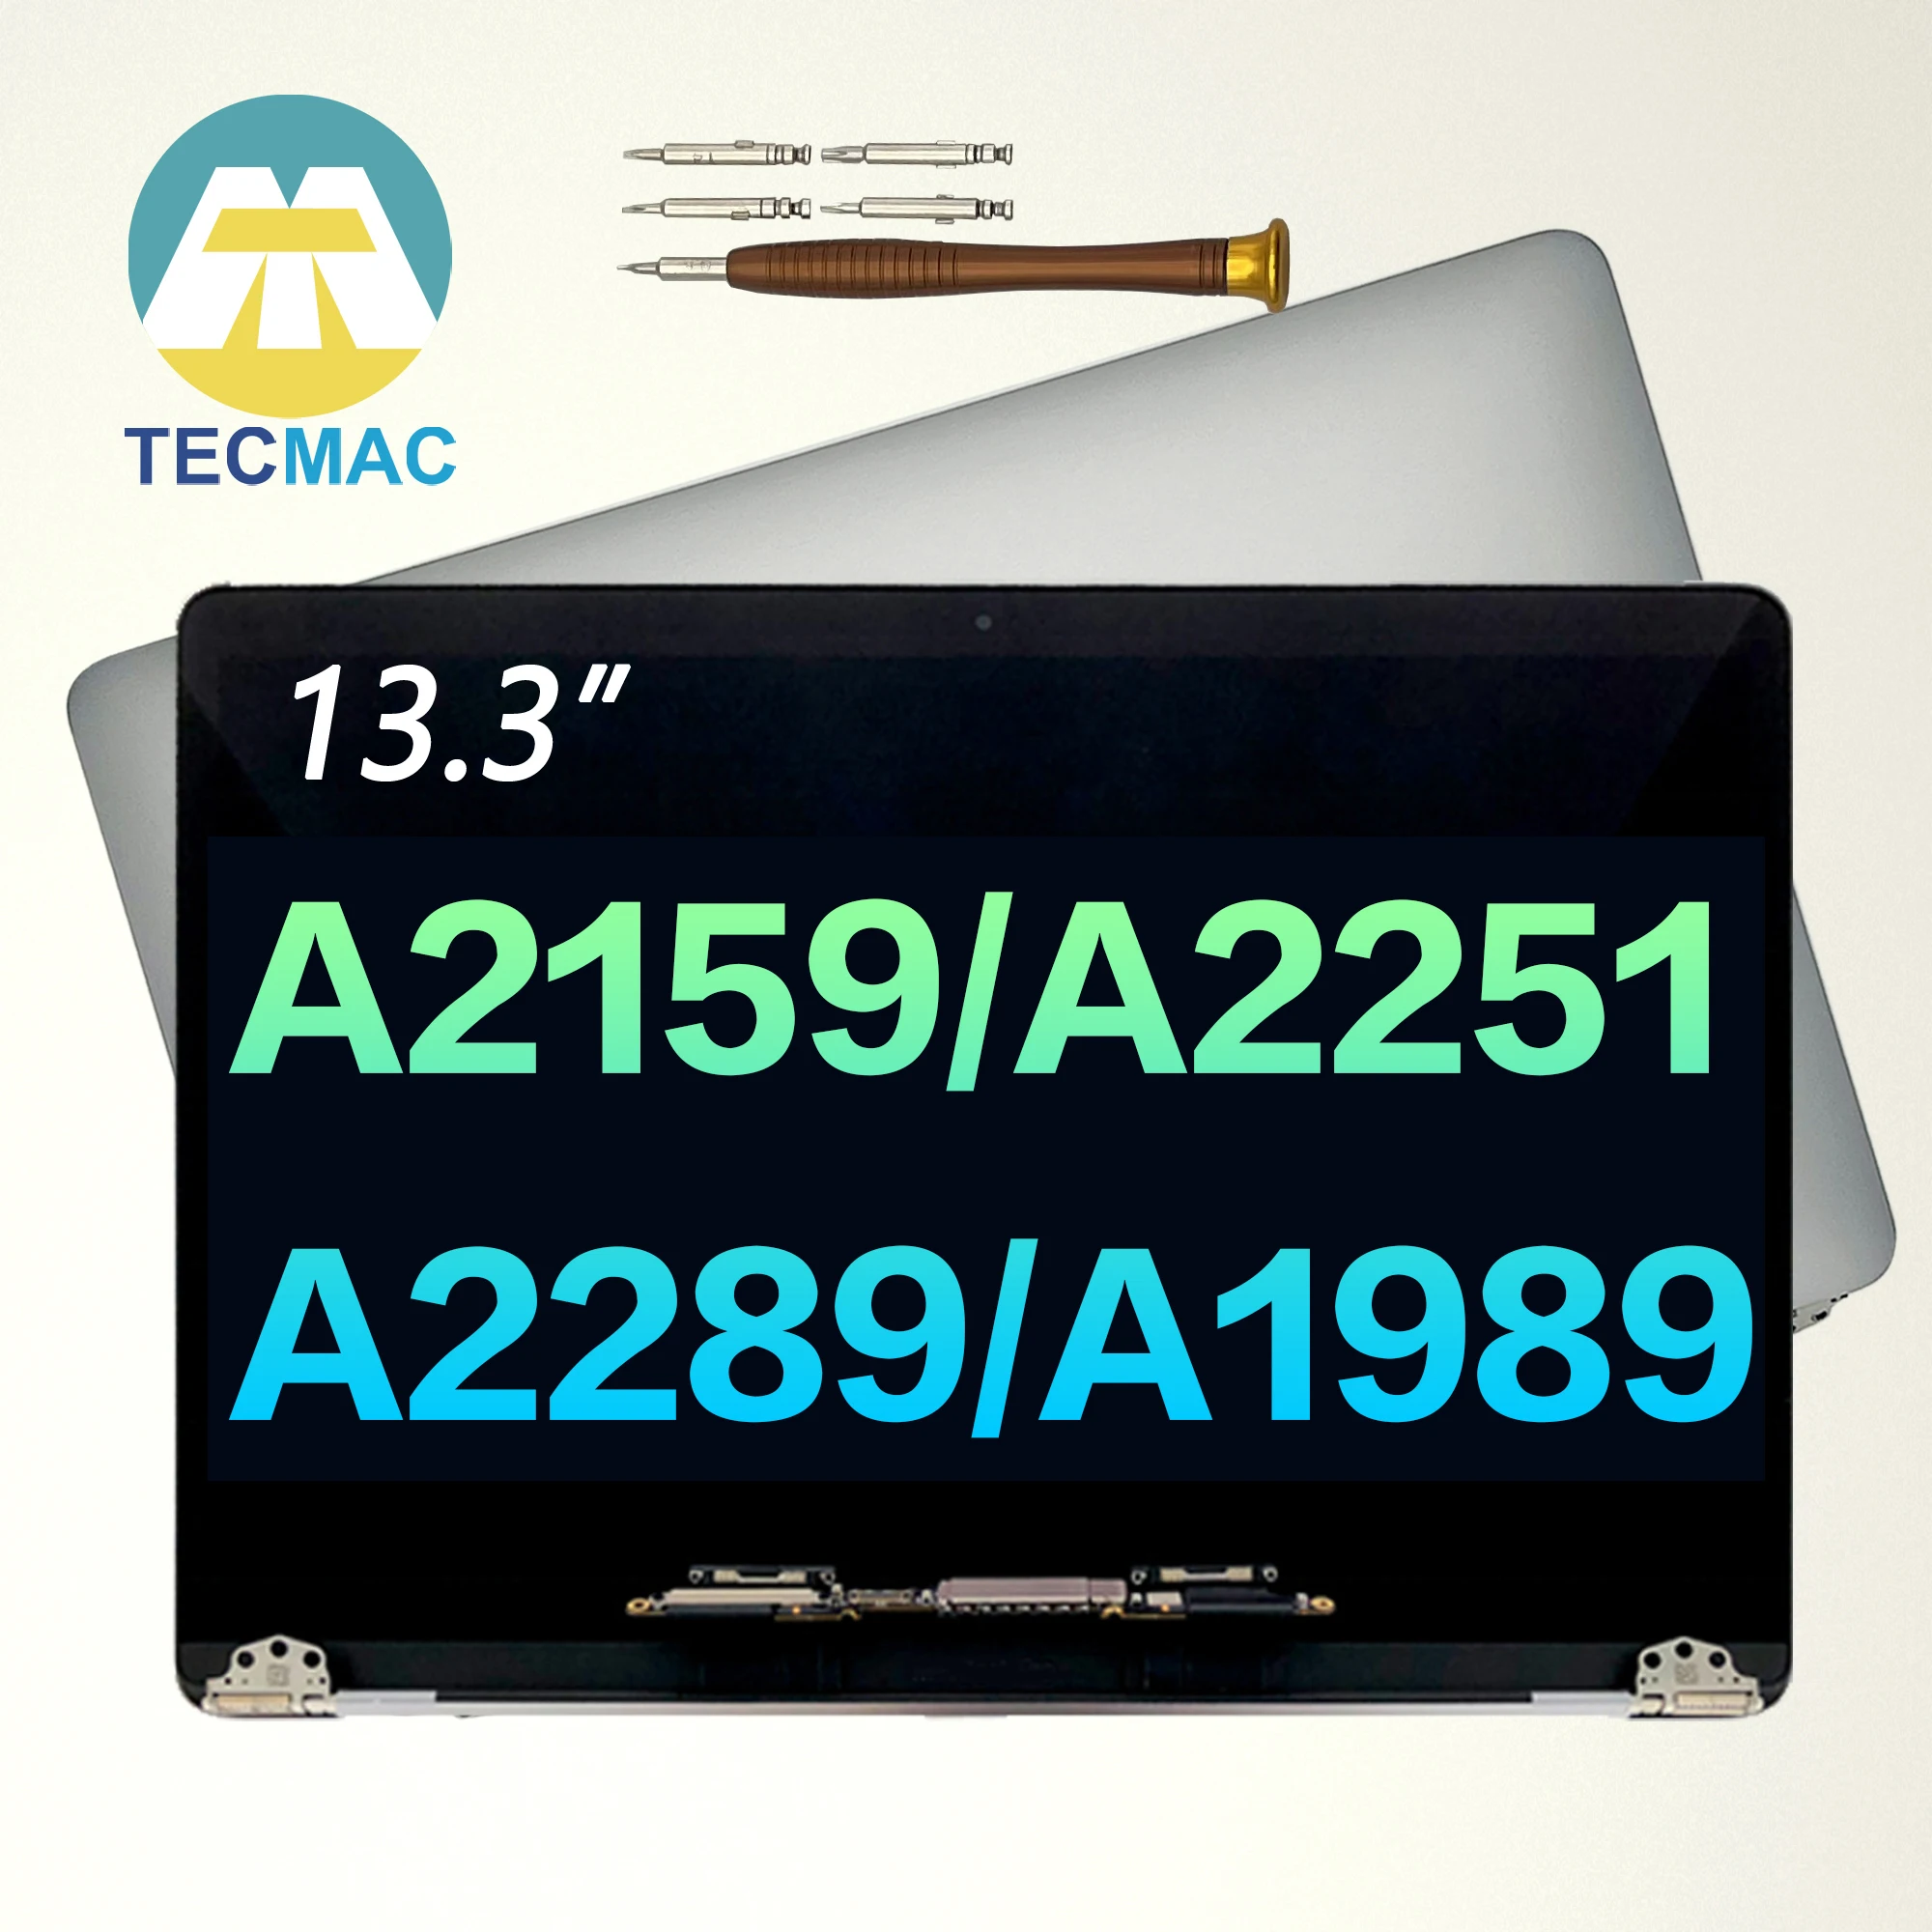 Новый A2159 A2251 A2289 A1989 сменный ЖК-экран для Macbook Pro 13 дюймов EMC 3214 3301 3348 3456 Space серый